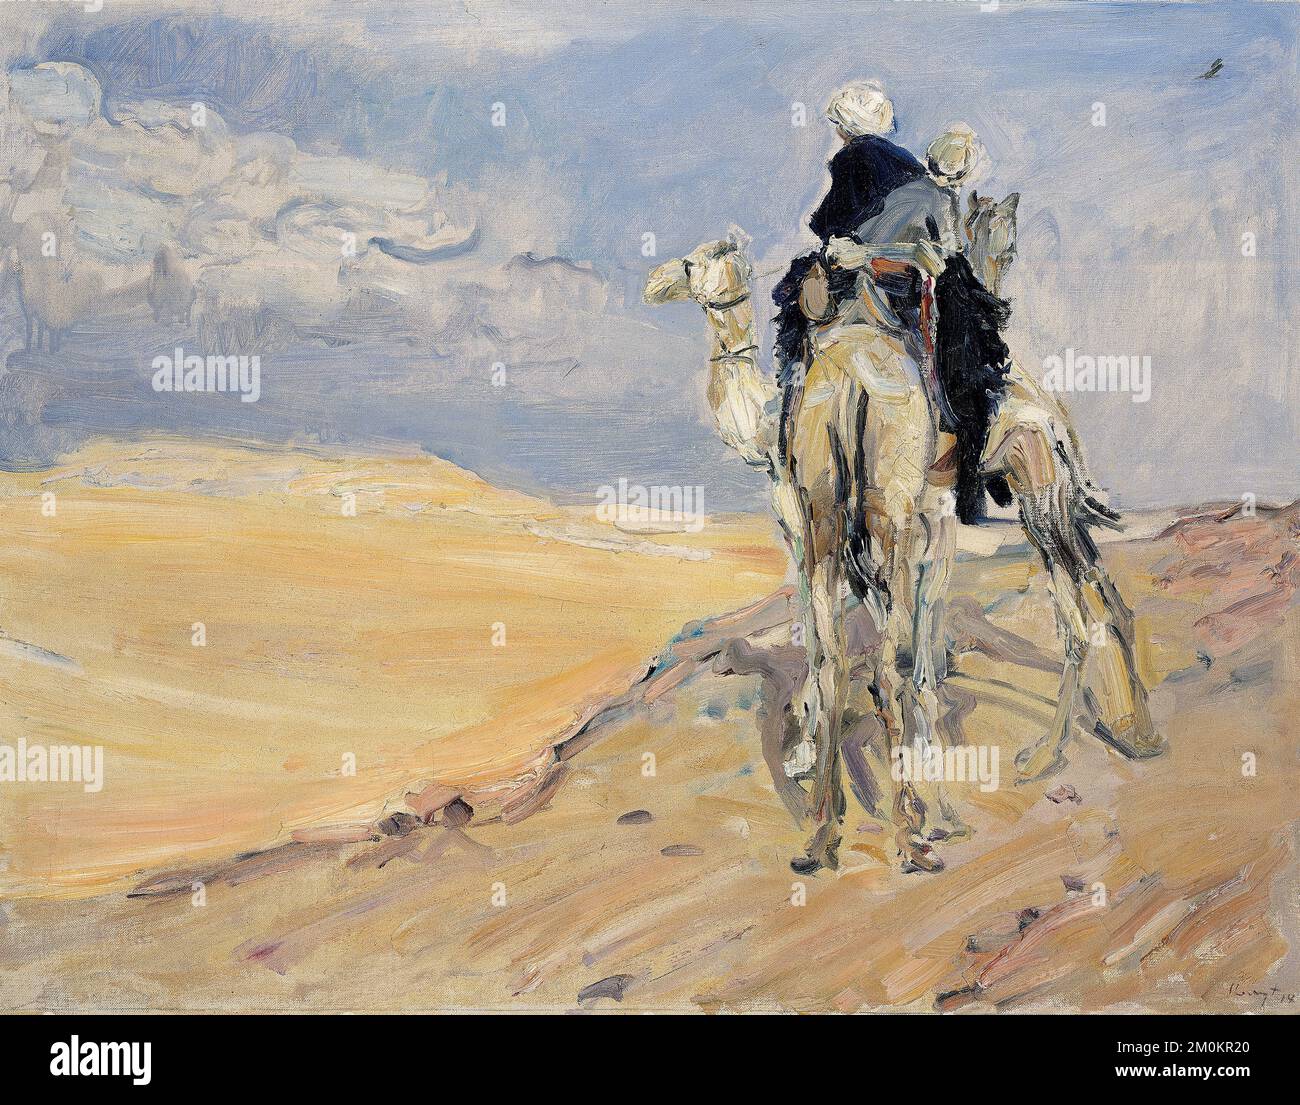 Max Slevogt, Sandsturm in der libyschen Wüste, Ölgemälde auf Leinwand, 1914 Stockfoto